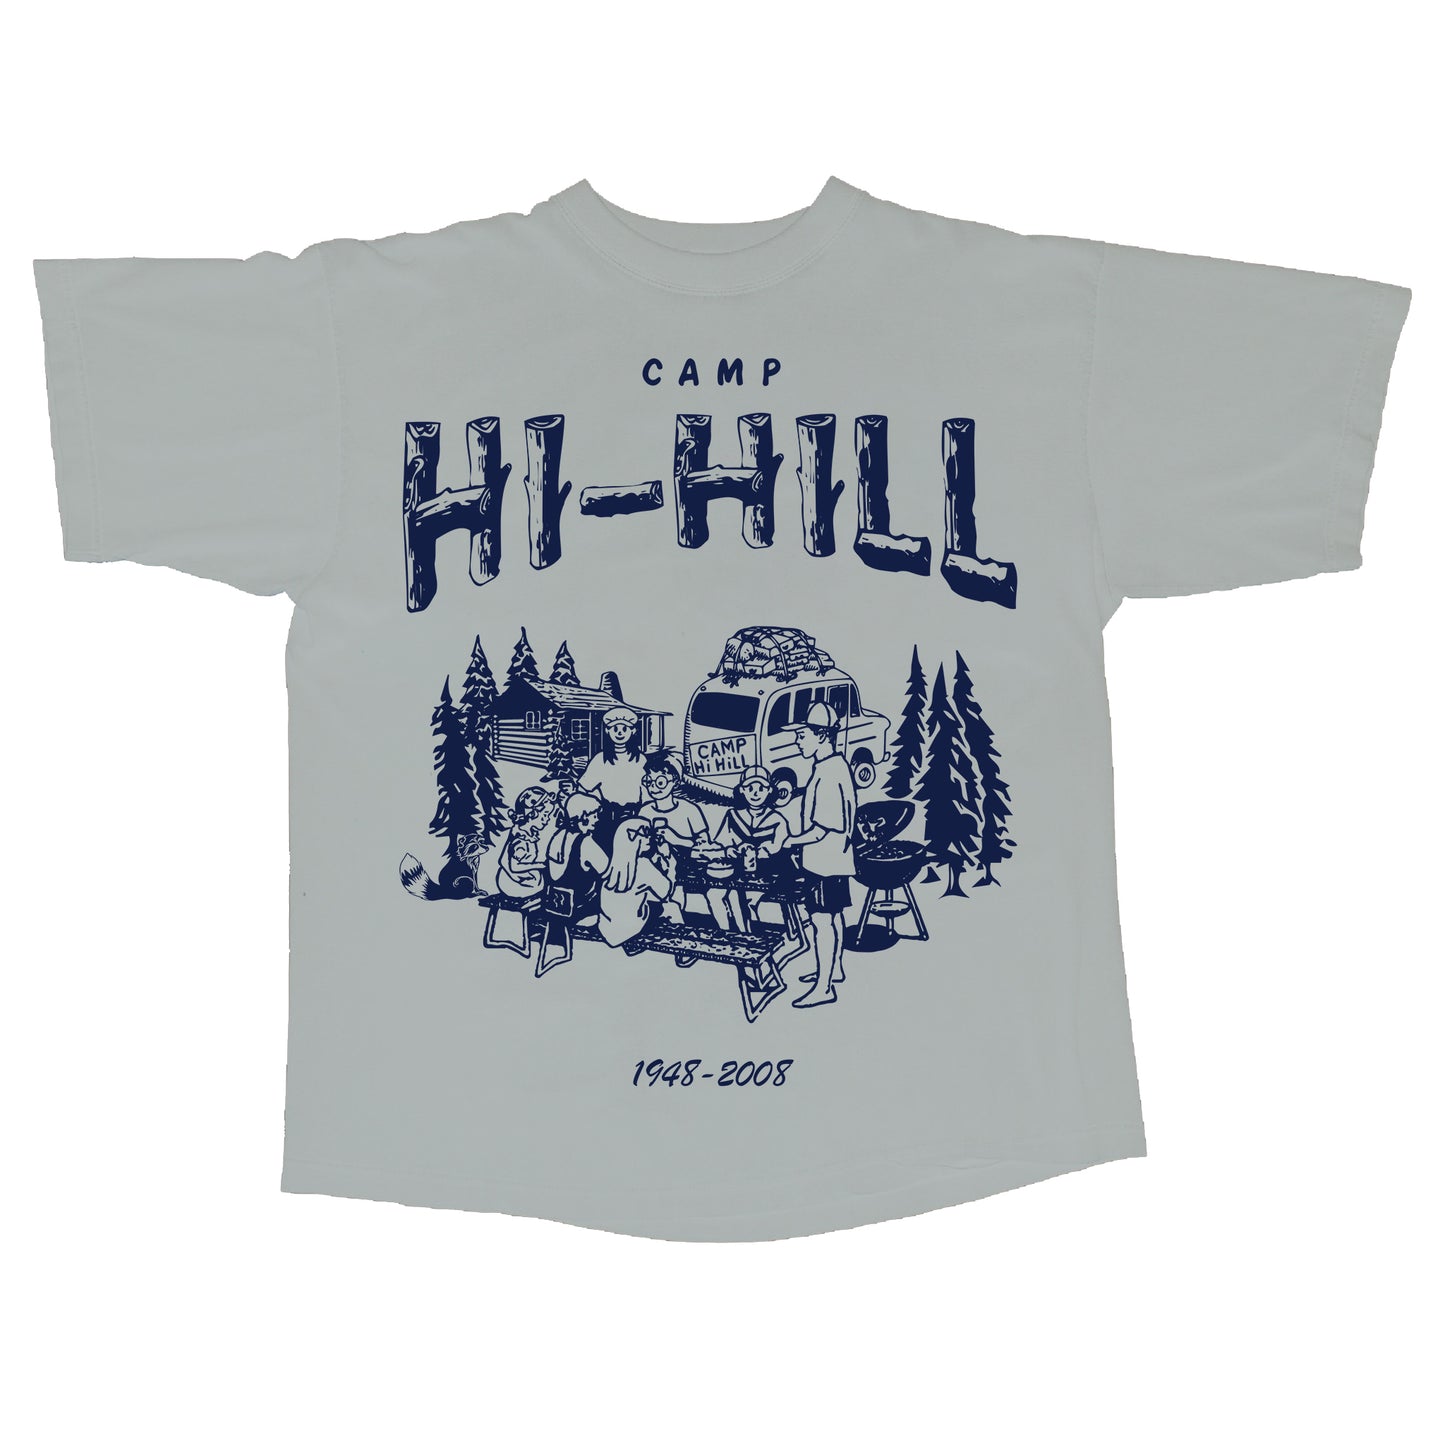 Hi-Hill Tee